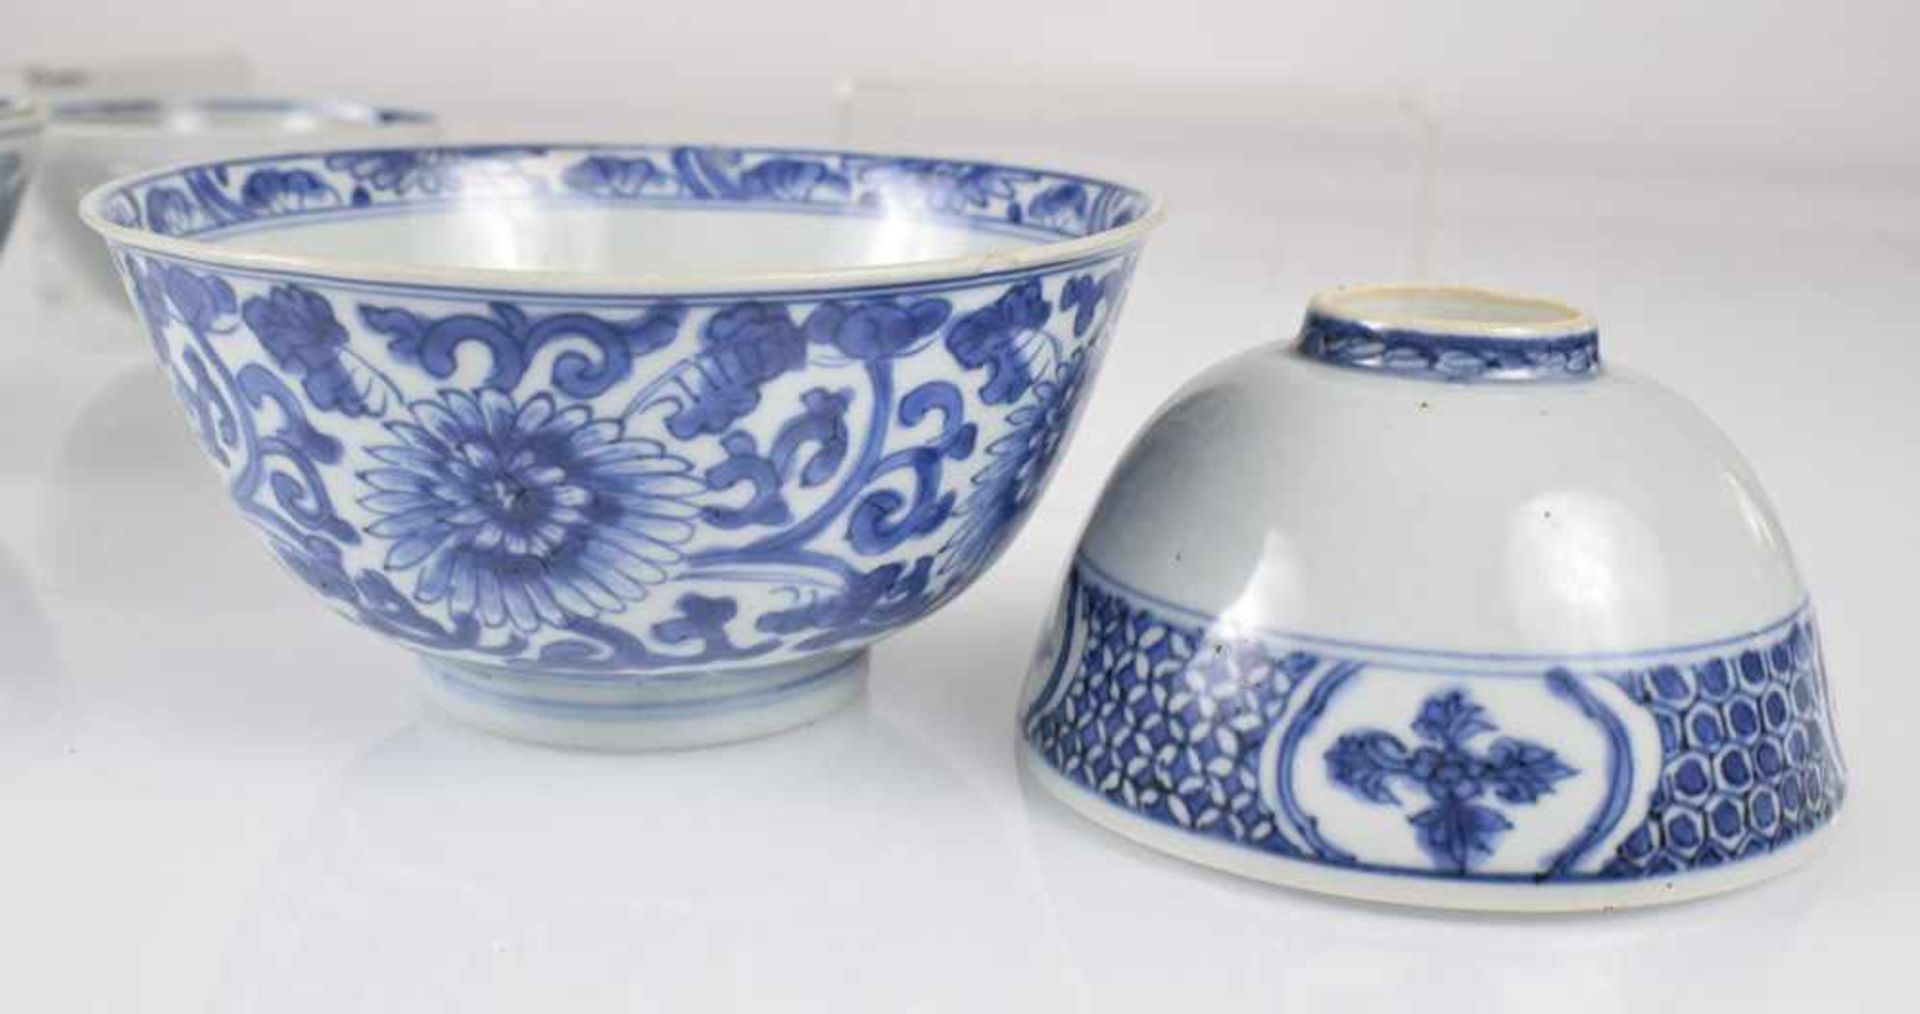 Sechs Porzellanschalen mit blau-weißem Dekor - Bild 3 aus 9